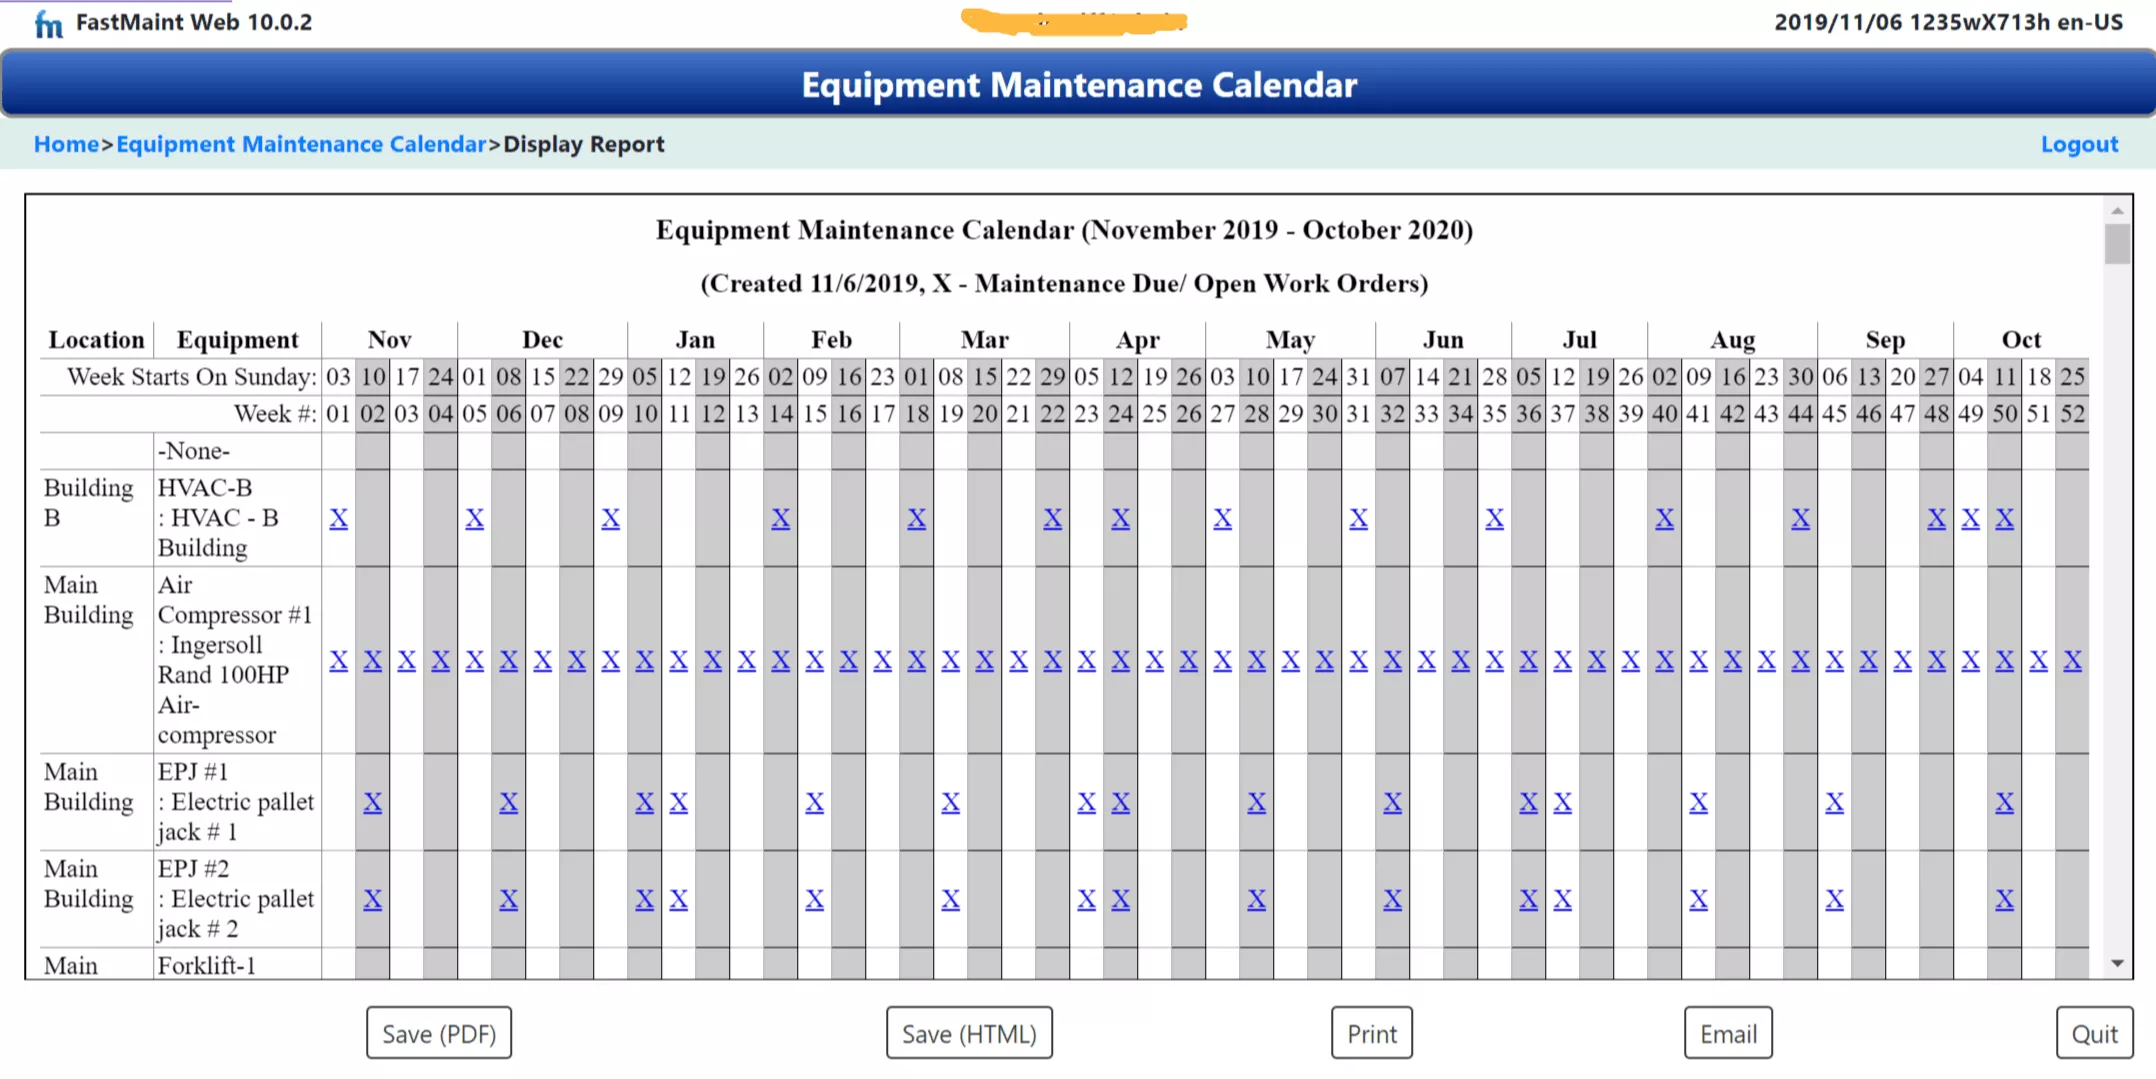 Equipment maintenance calendar report